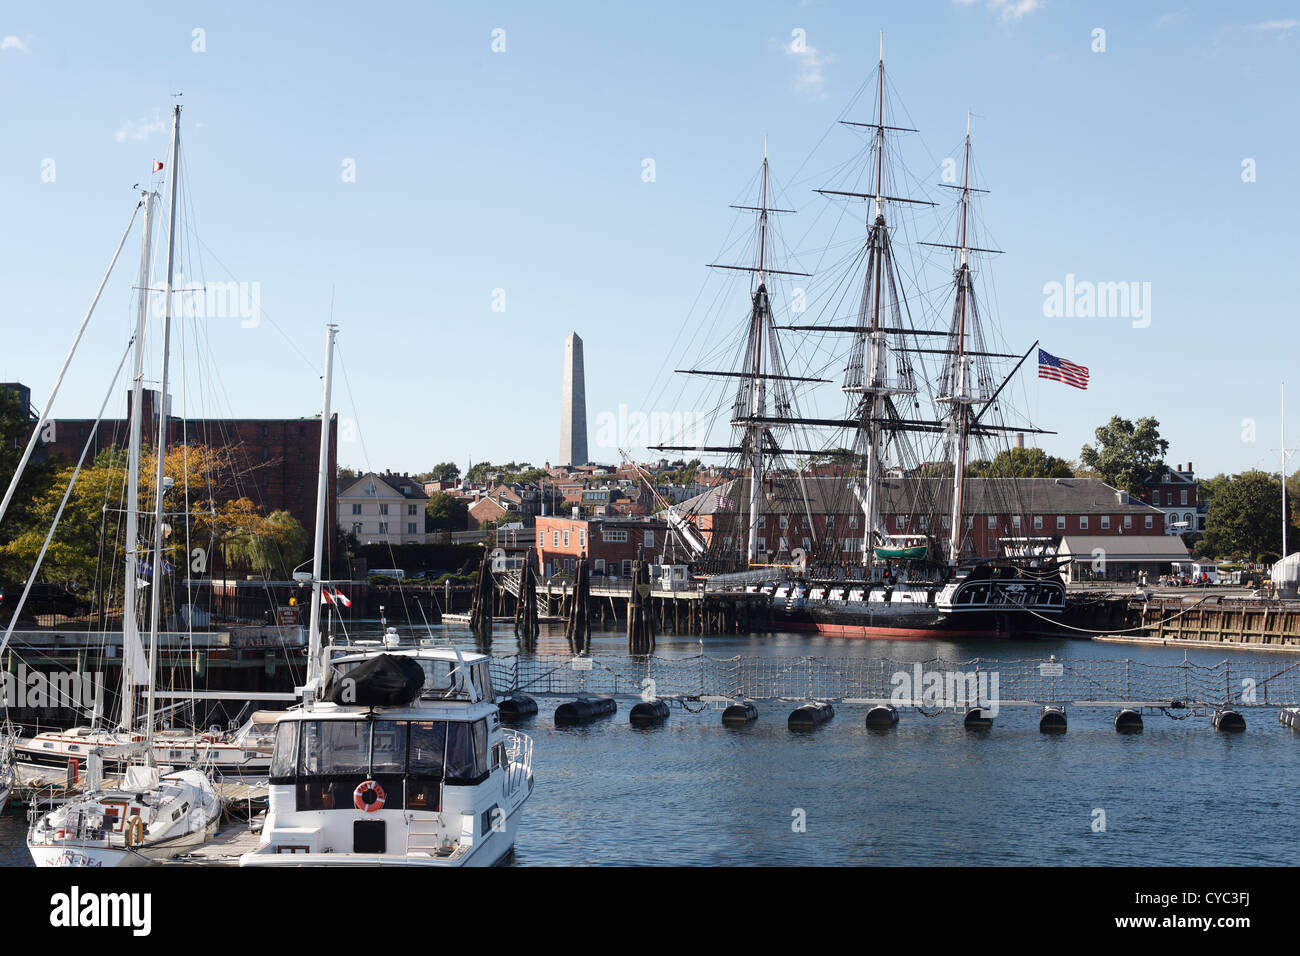 Le USS Constitution connu aussi sous le nom de vieux à l'Ironsides Chantier Naval de Charlestown, Boston Massachusetts, le plus ancien navire de la marine de service Septembre 2012 Banque D'Images